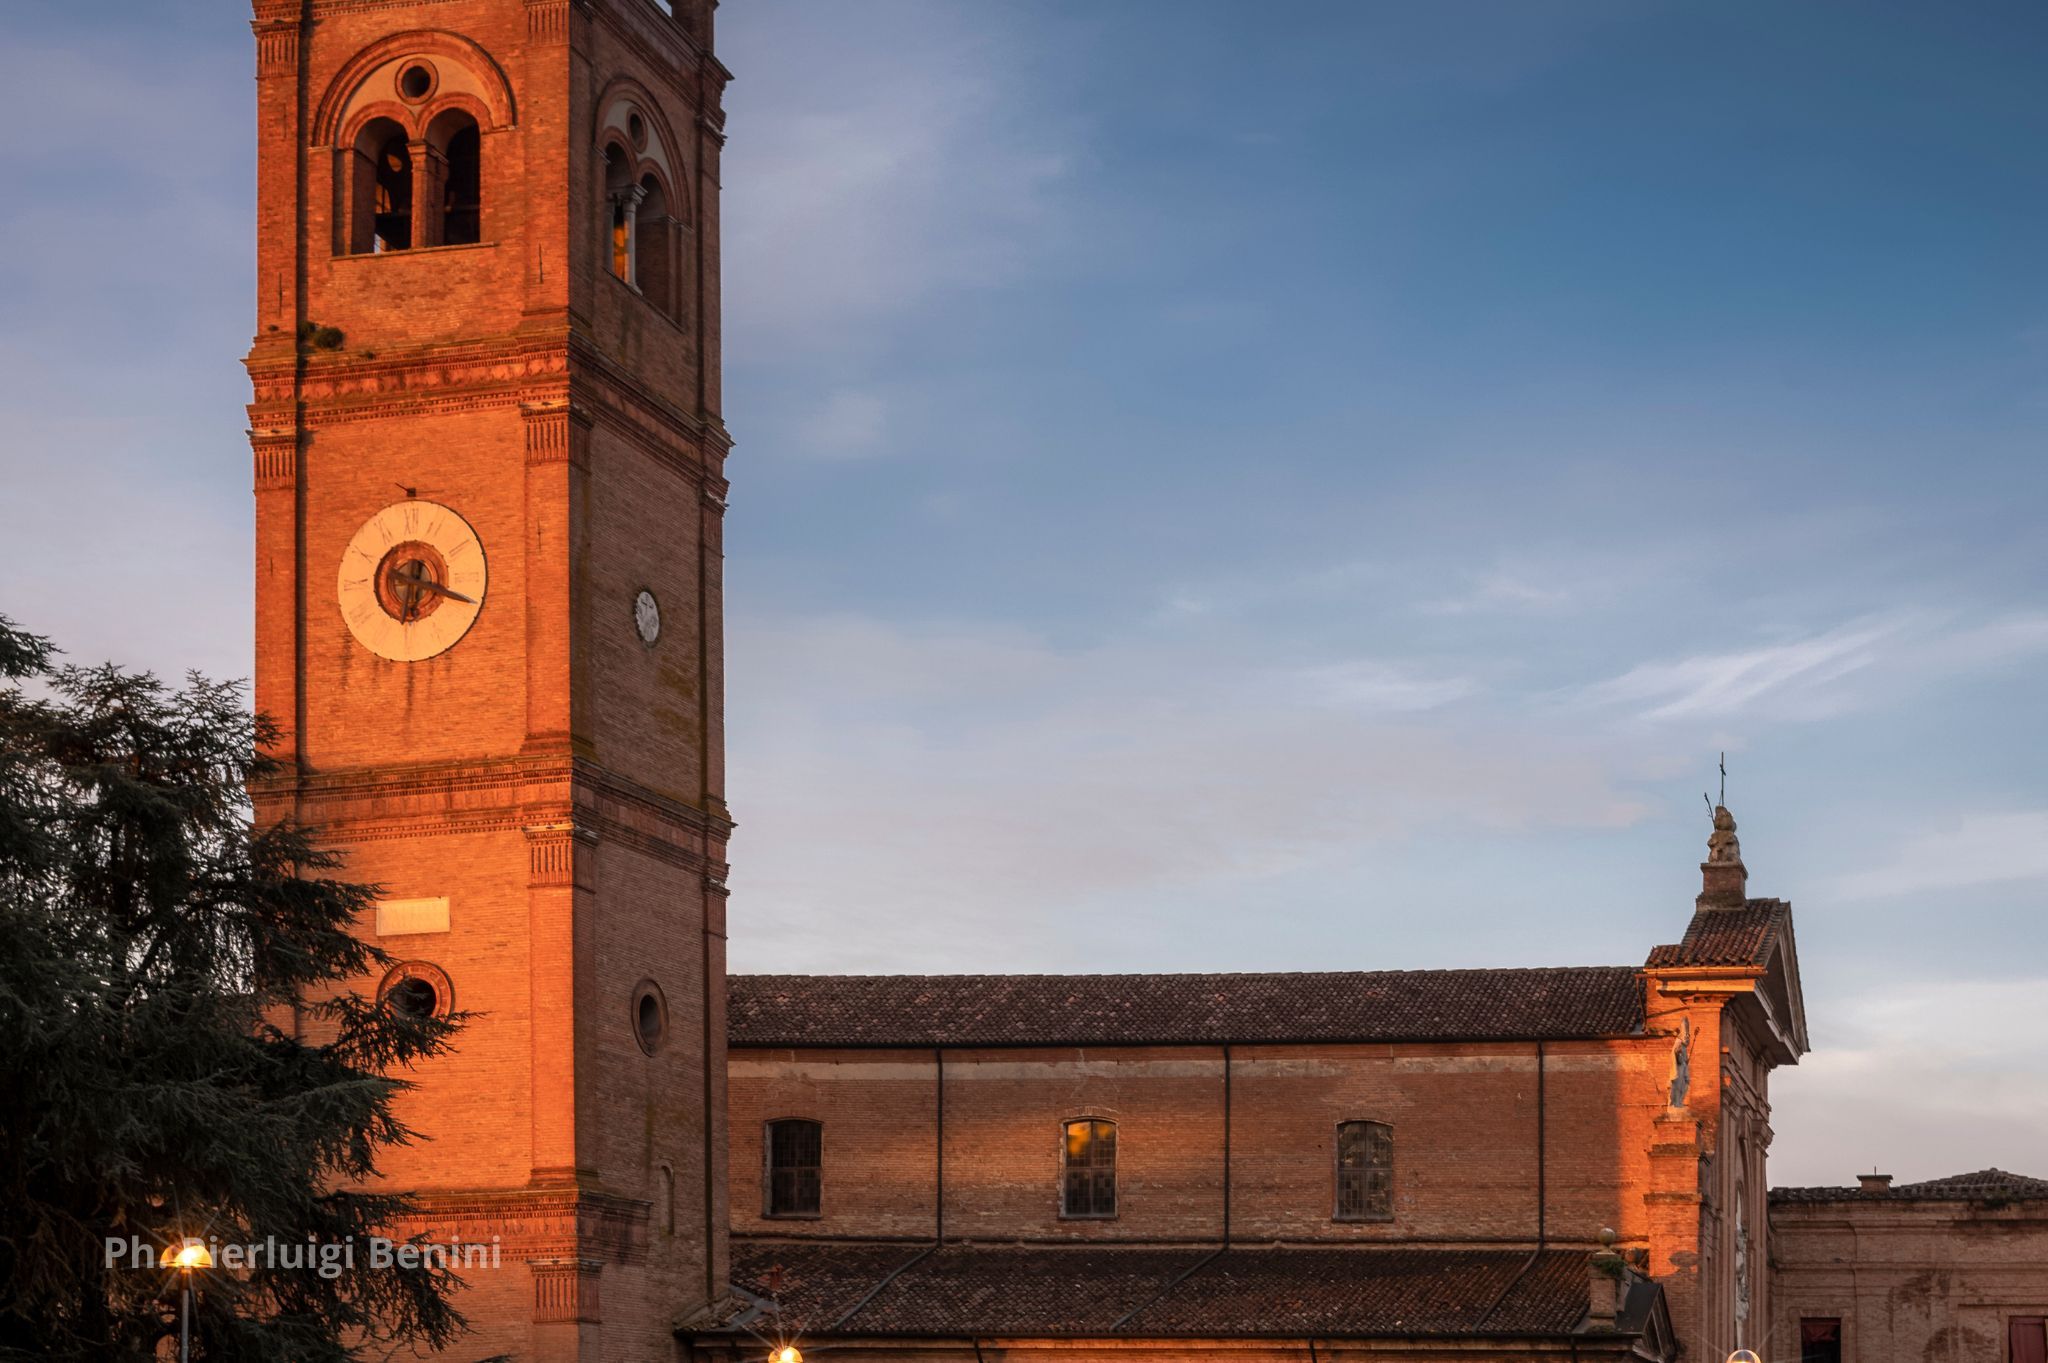 Cattedrale di San Giorgio a Ferrara